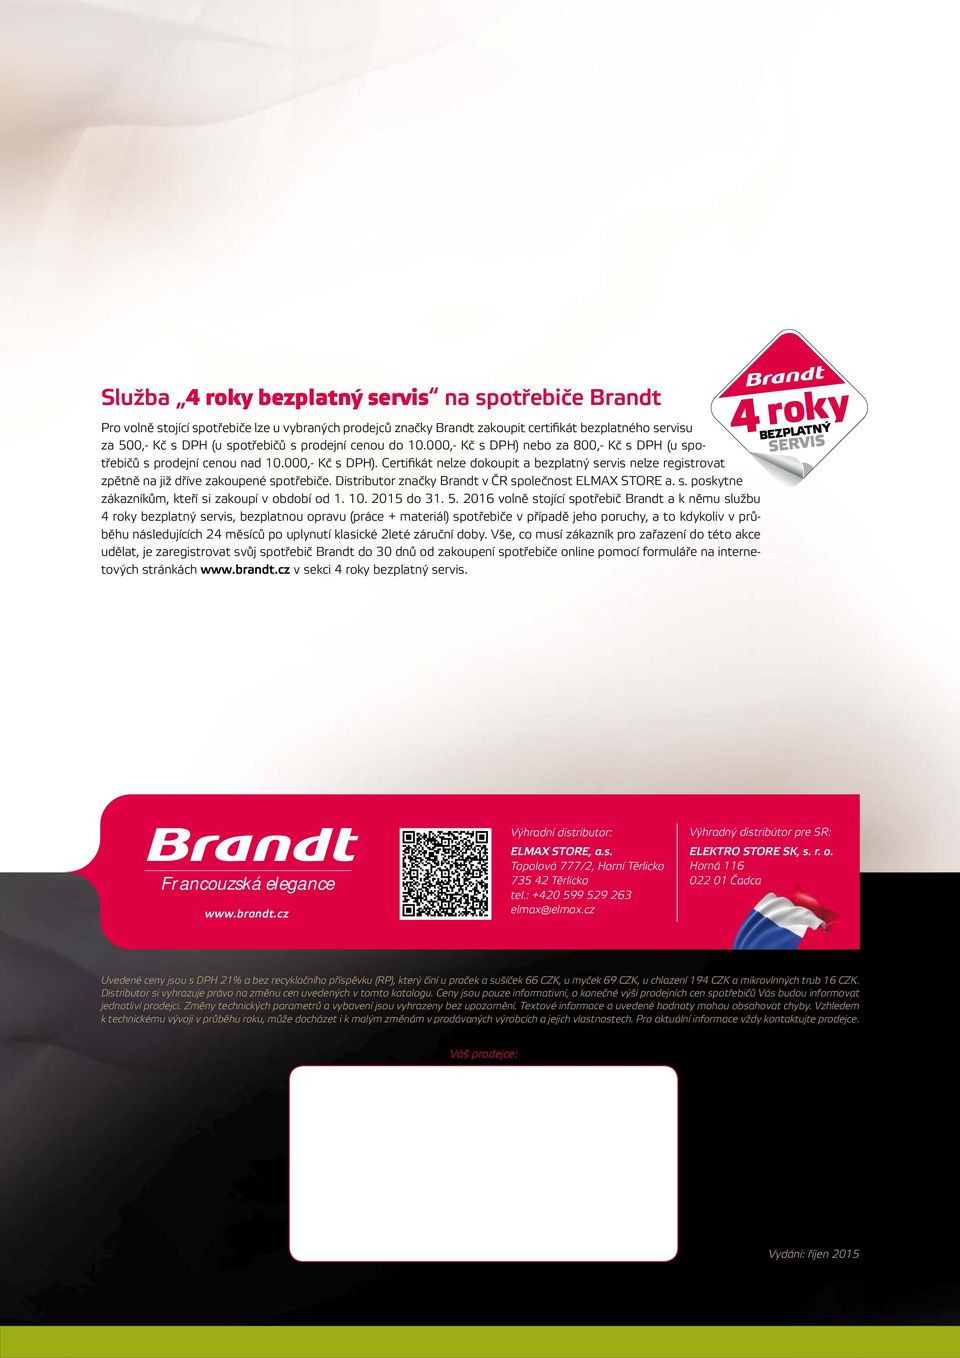 Distributor značky Brandt v ČR společnost ELMAX STORE a. s. poskytne zákazníkům, kteří si zakoupí v období od 1. 10. 2015 do 31. 5.